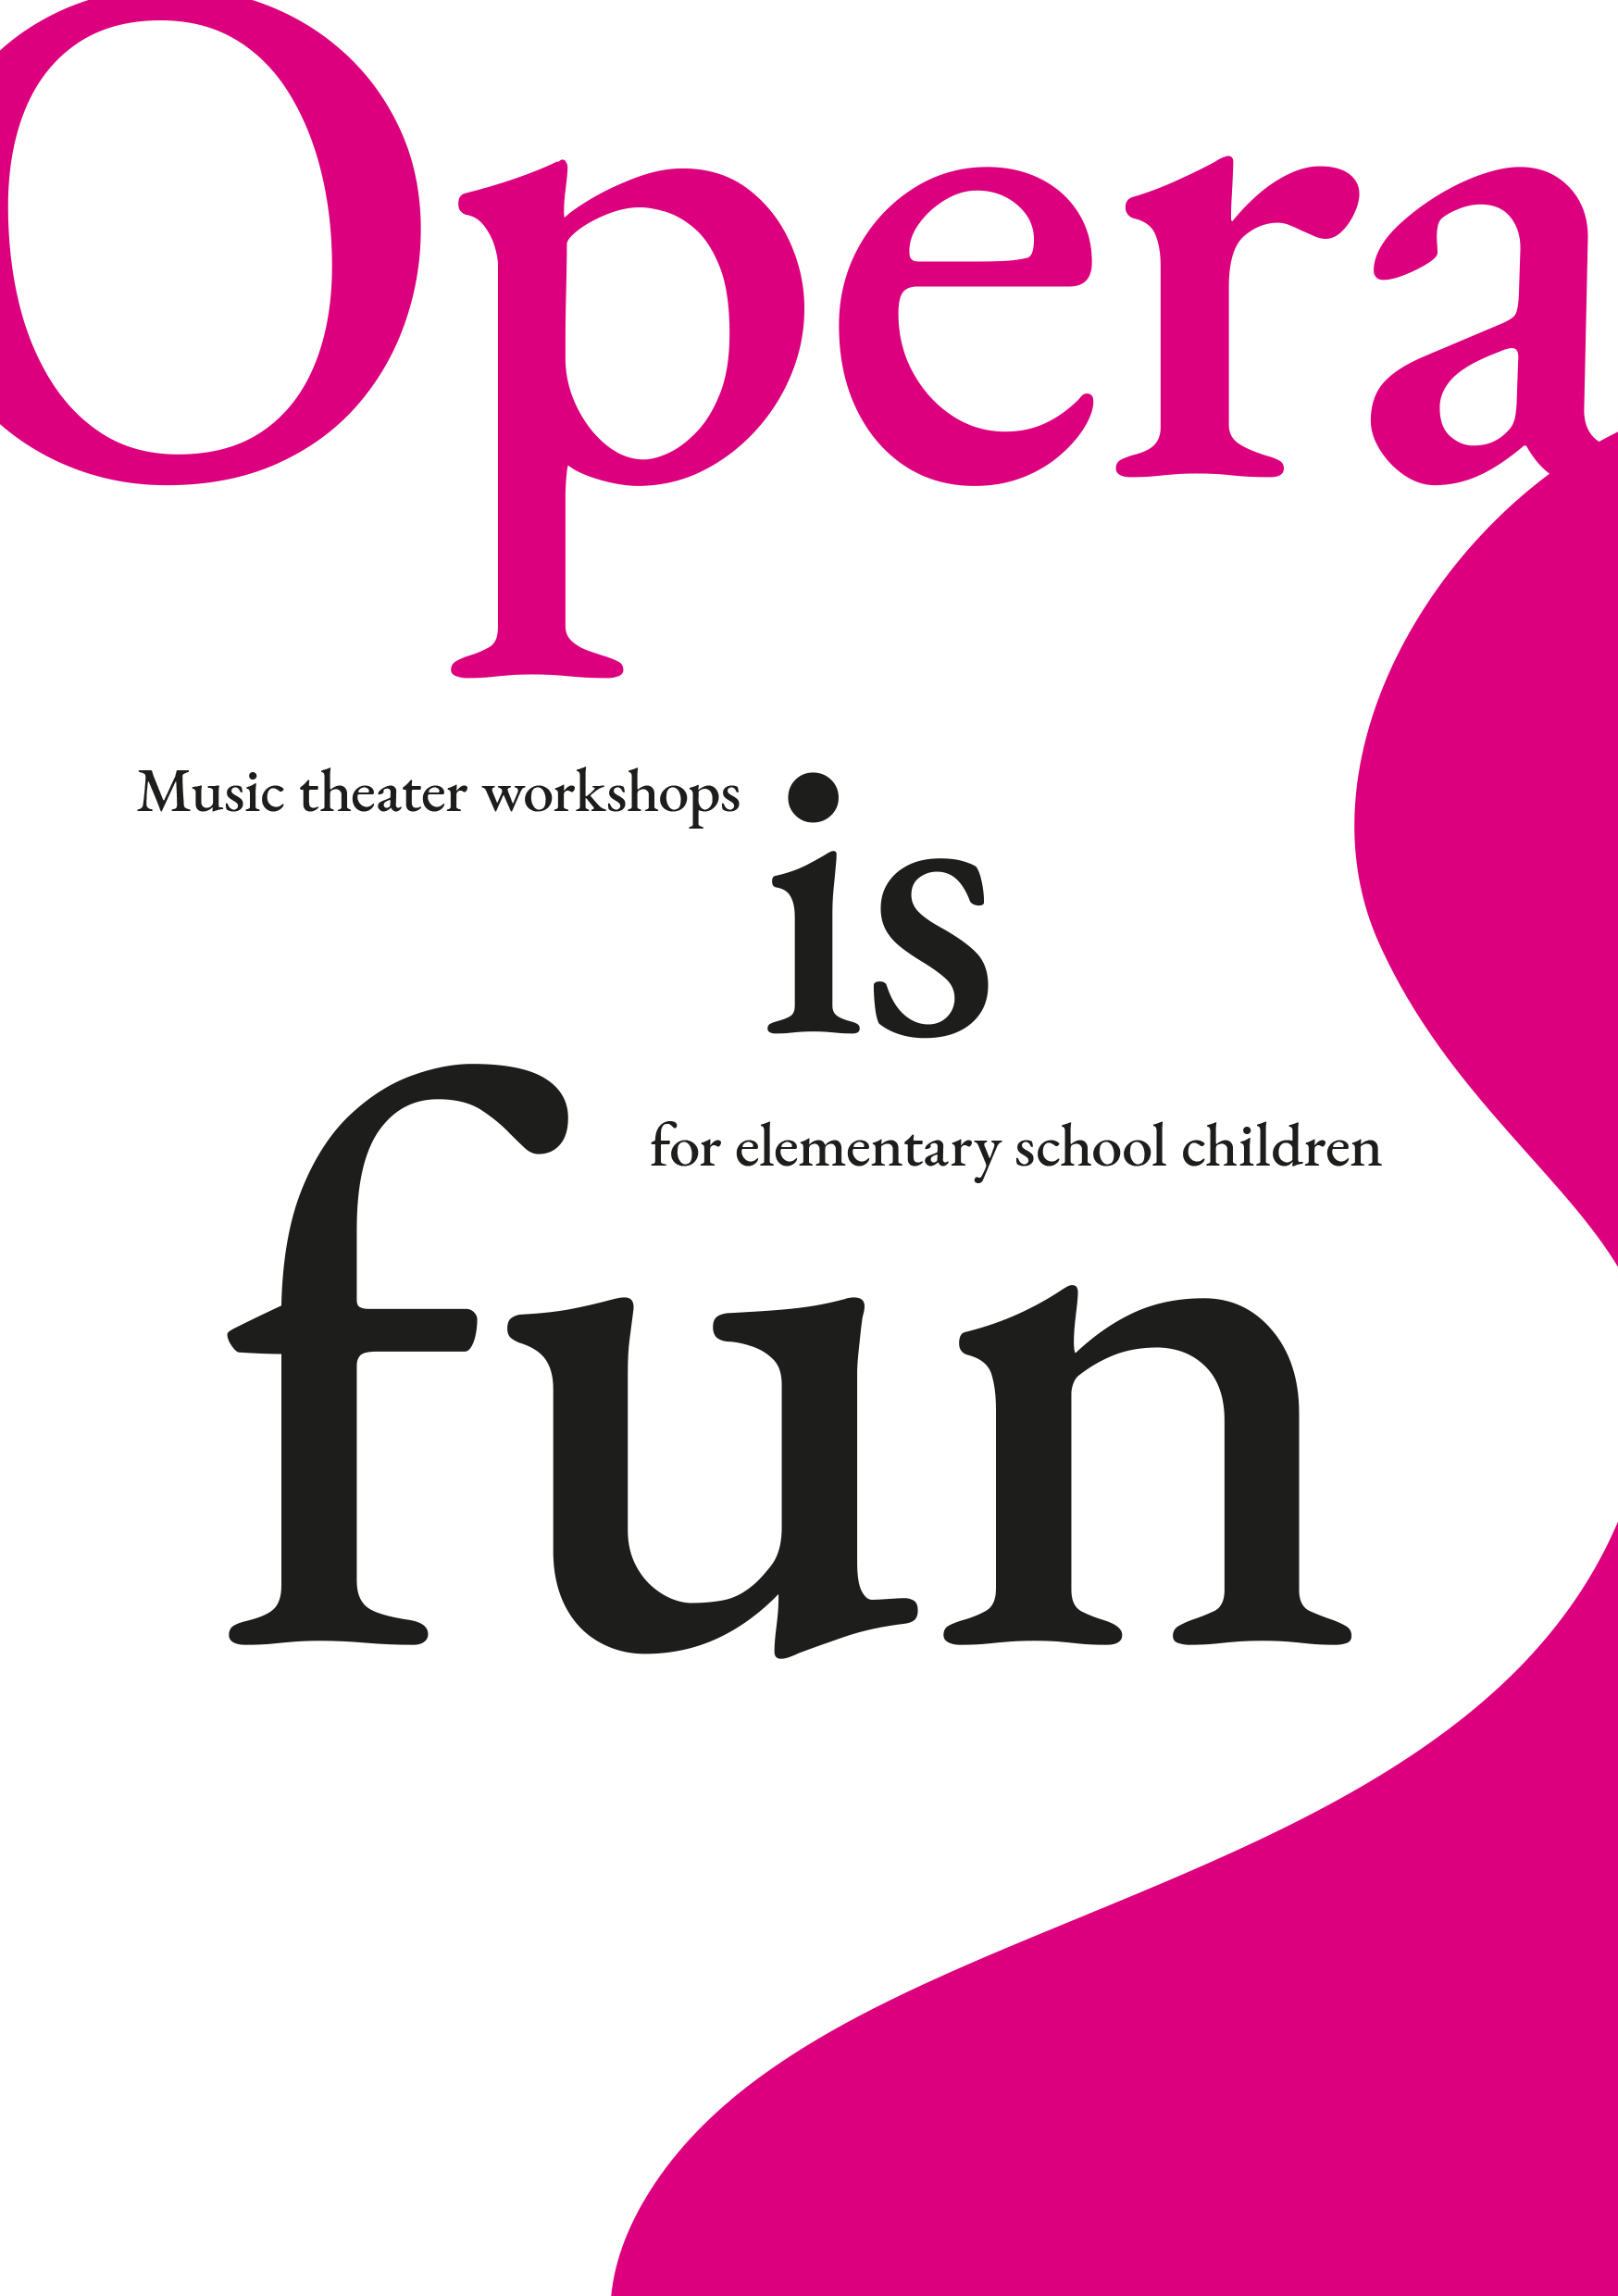 Opera is fun!